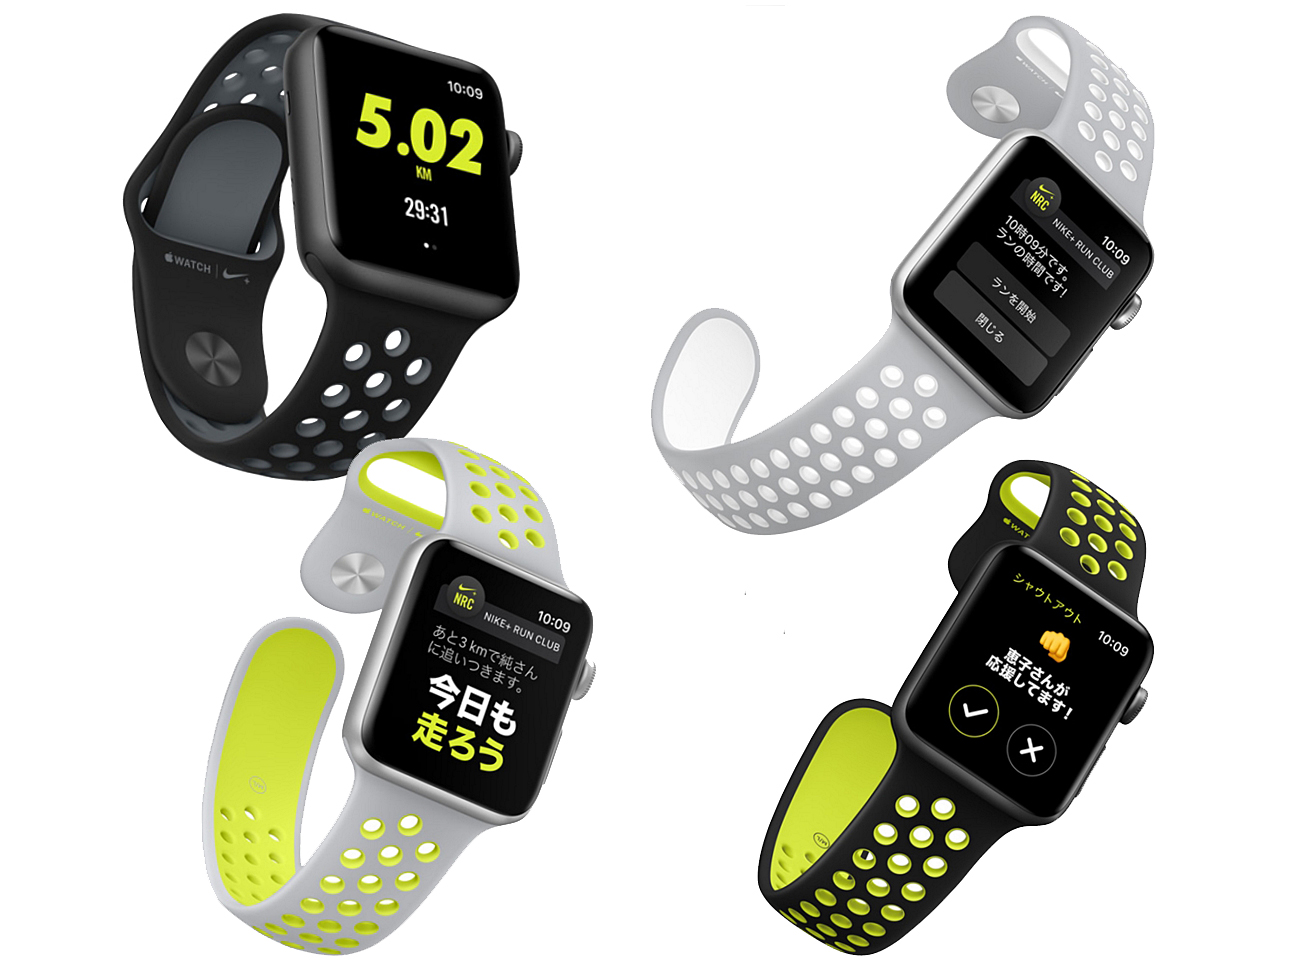 アップルとナイキのランニング向けコラボモデル Apple Watch Nike+ 予約解禁 - ナイキ